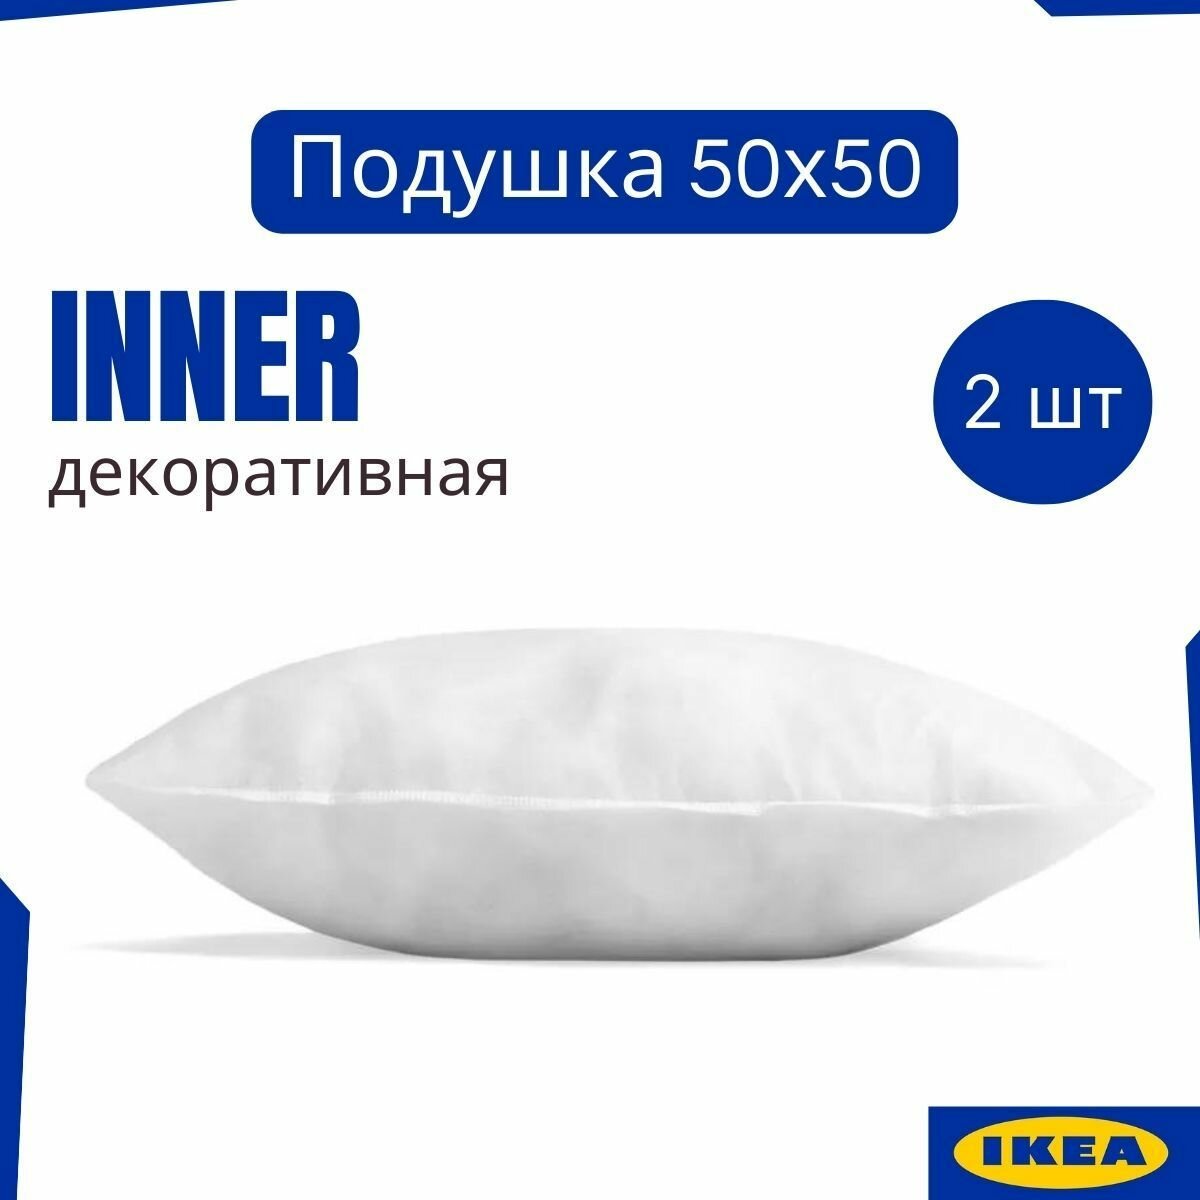 Декоративные подушки IKEA INNER набор 3шт 50х50 для интерьера подушки на диван для декора внутренняя подушка